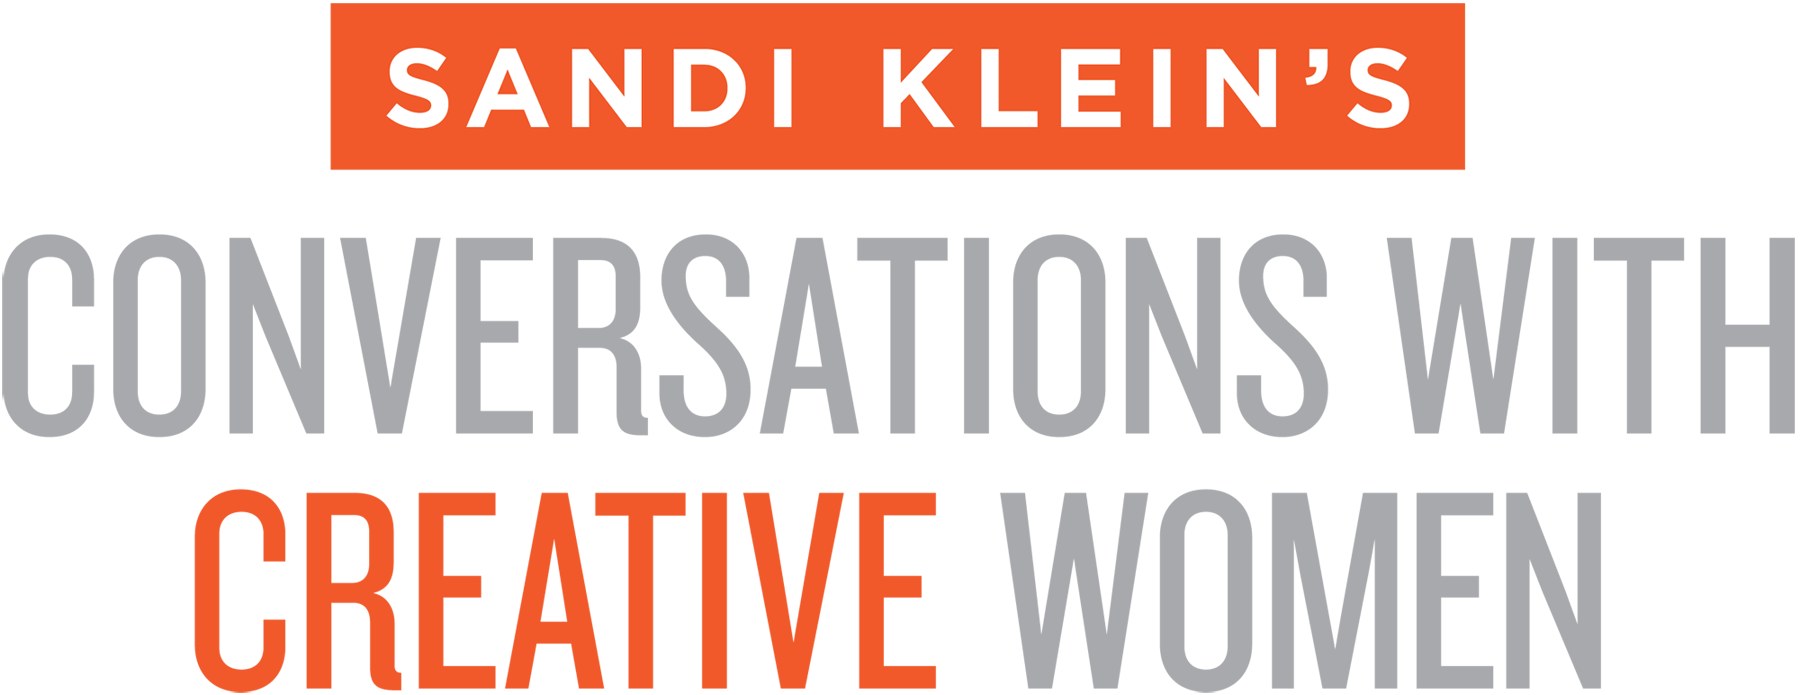 Sandi Klein’s Conversations with Creative Women header image 1